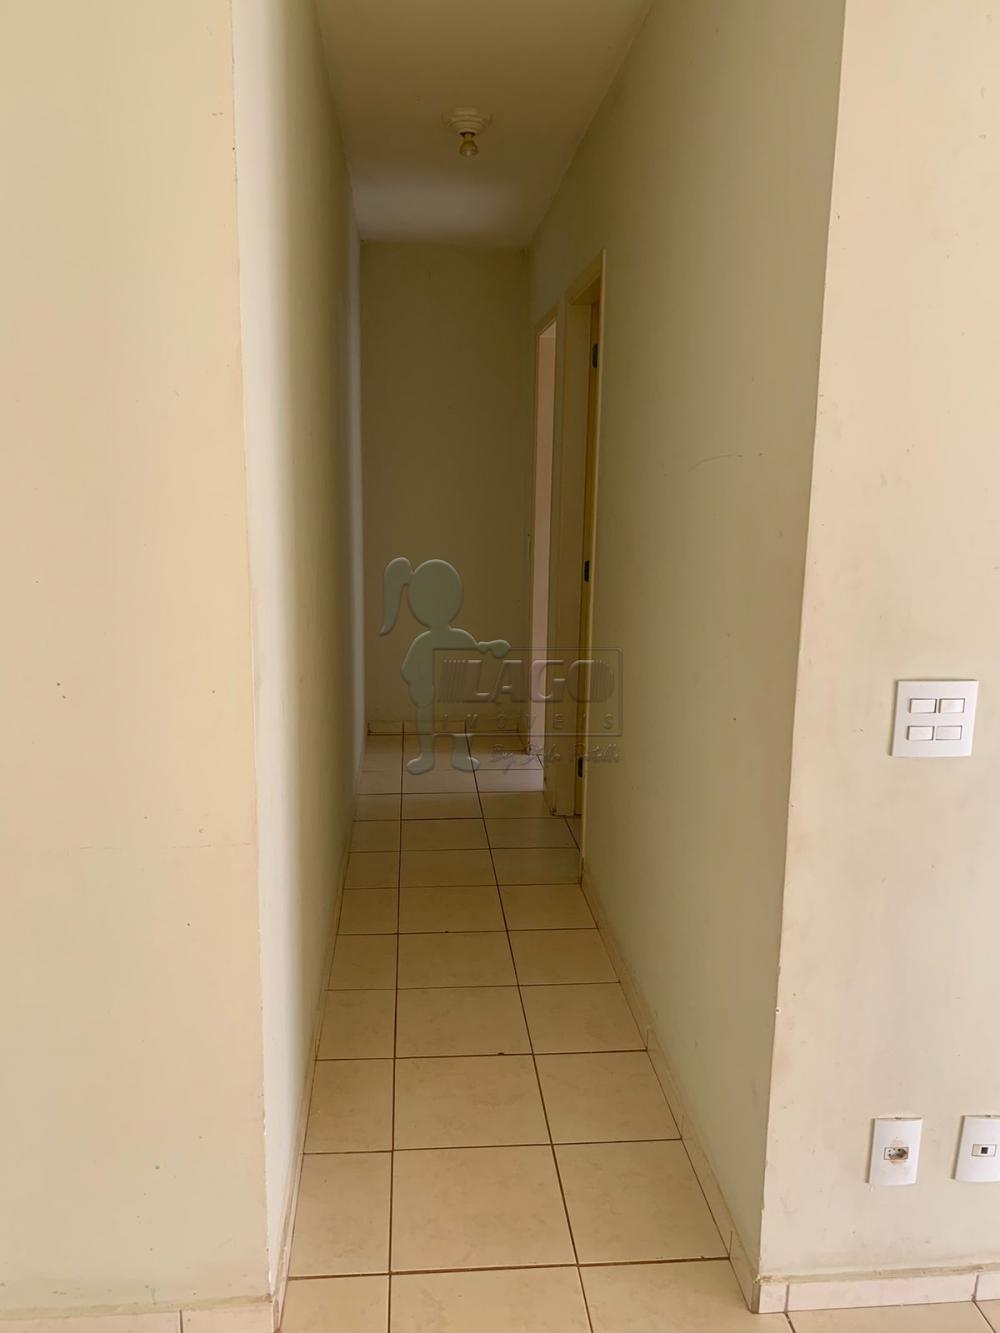 Alugar Apartamentos / Padrão em Ribeirão Preto R$ 670,00 - Foto 5